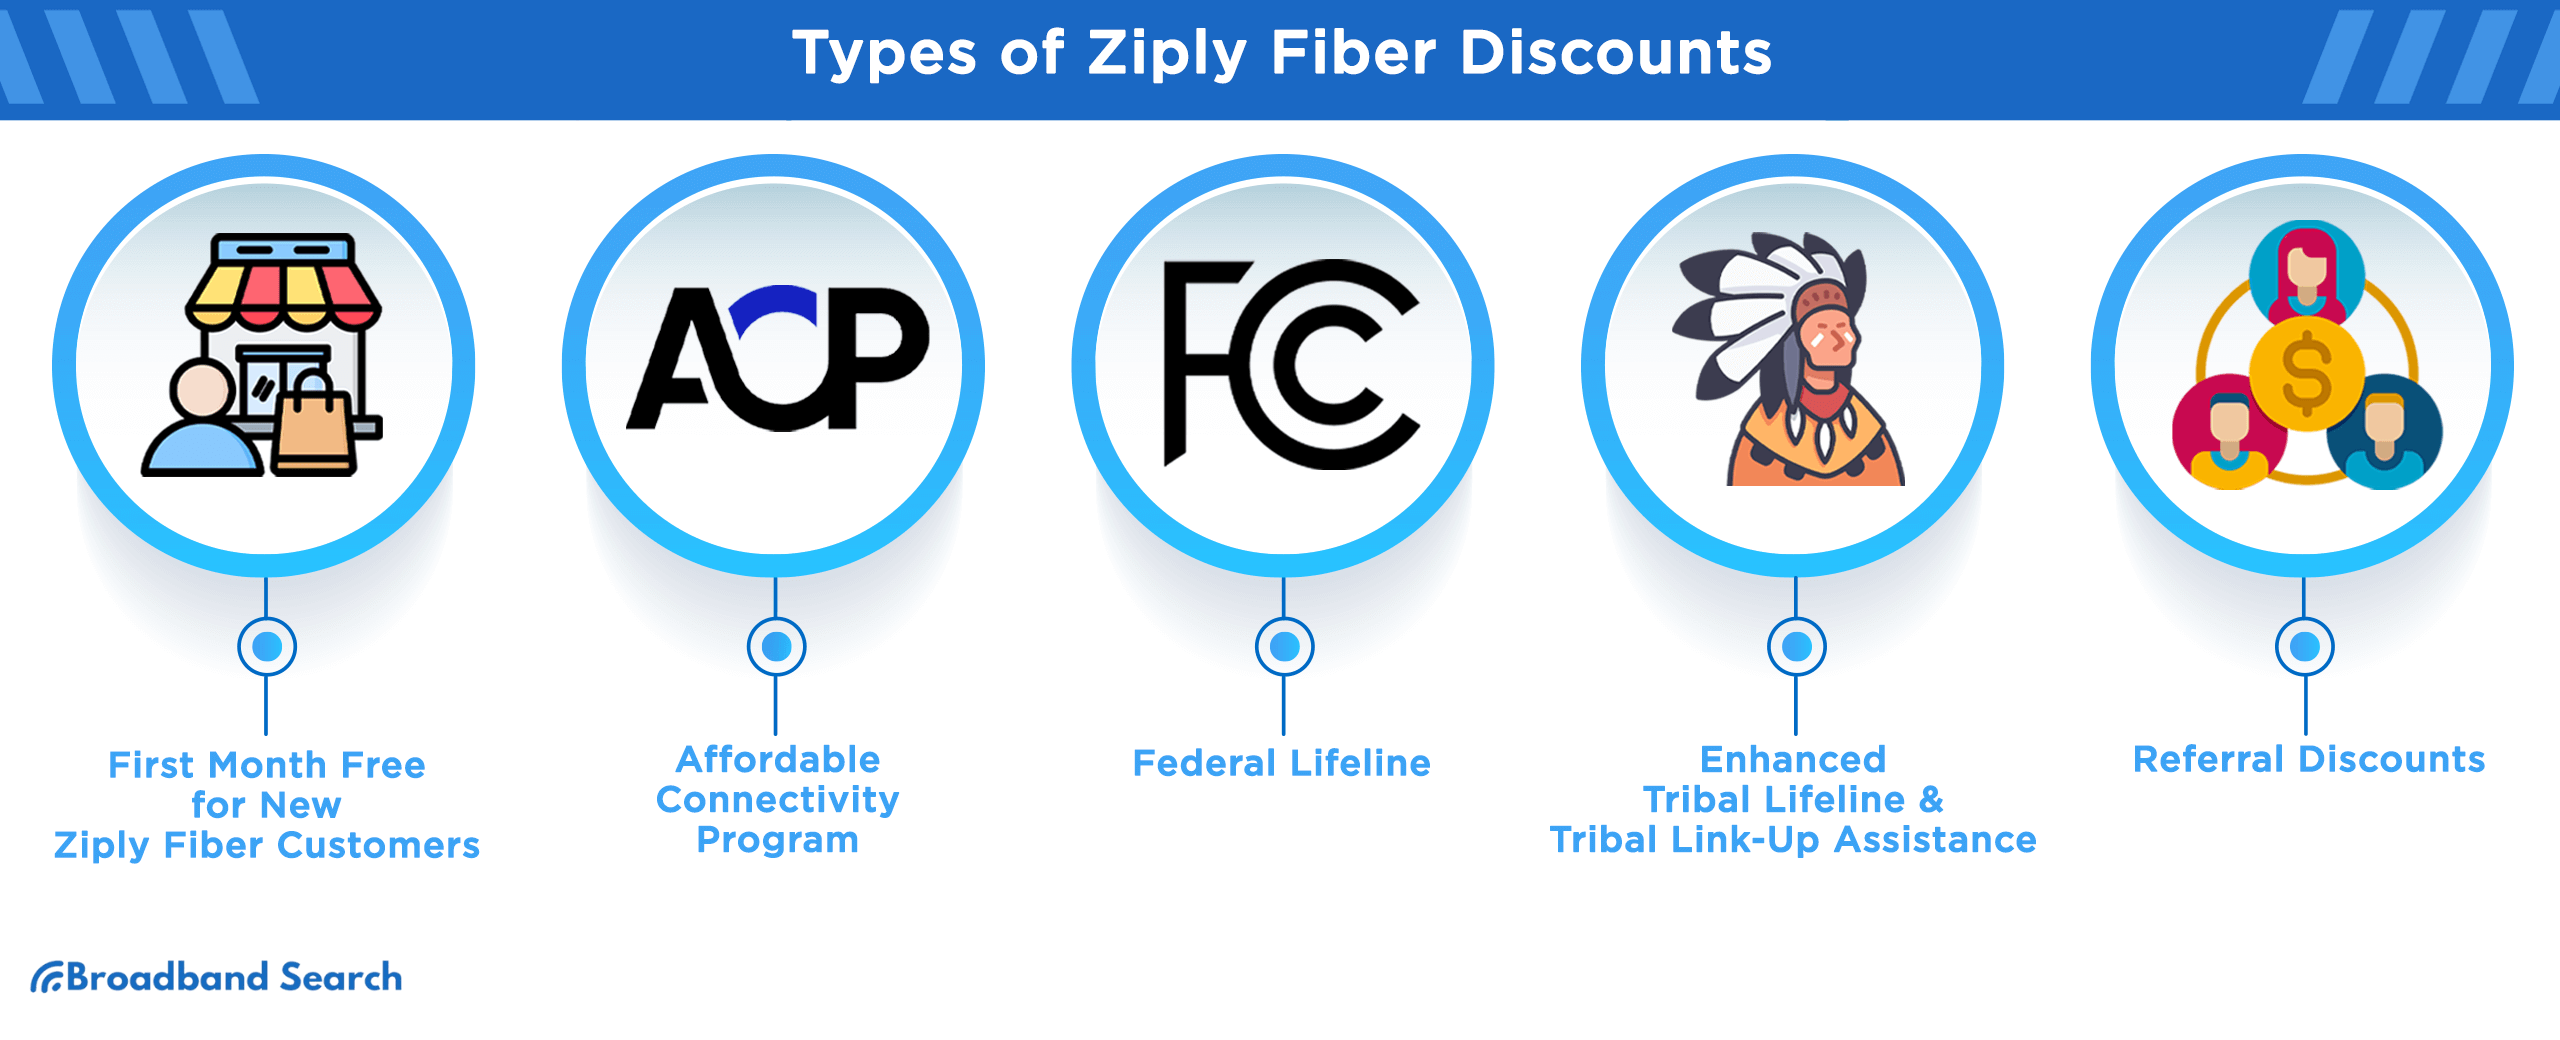 Types of Ziply Fiber Discounts